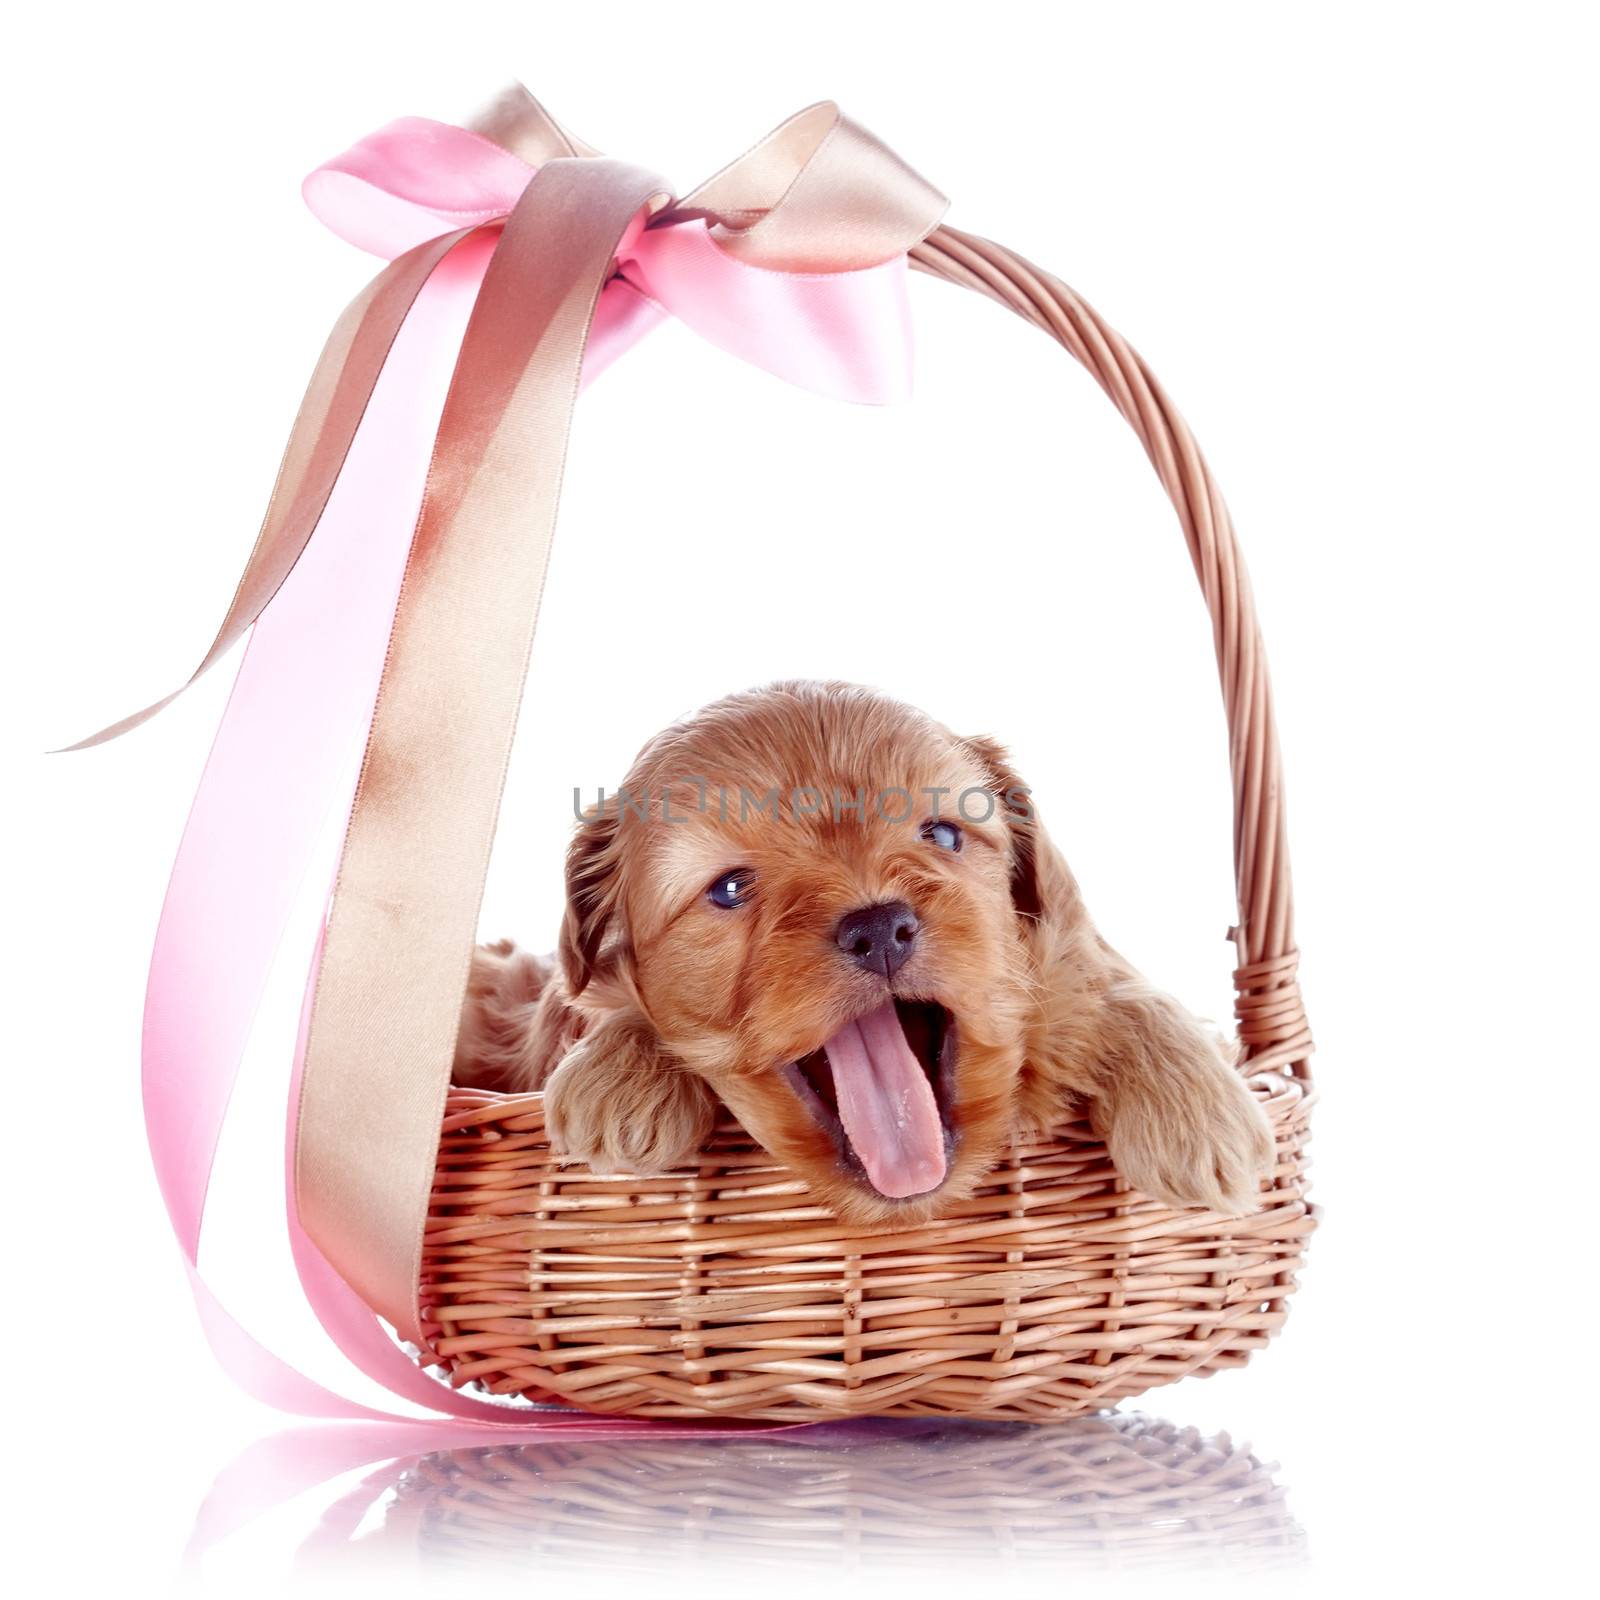 Puppy in a wattled basket with a bow. by Azaliya